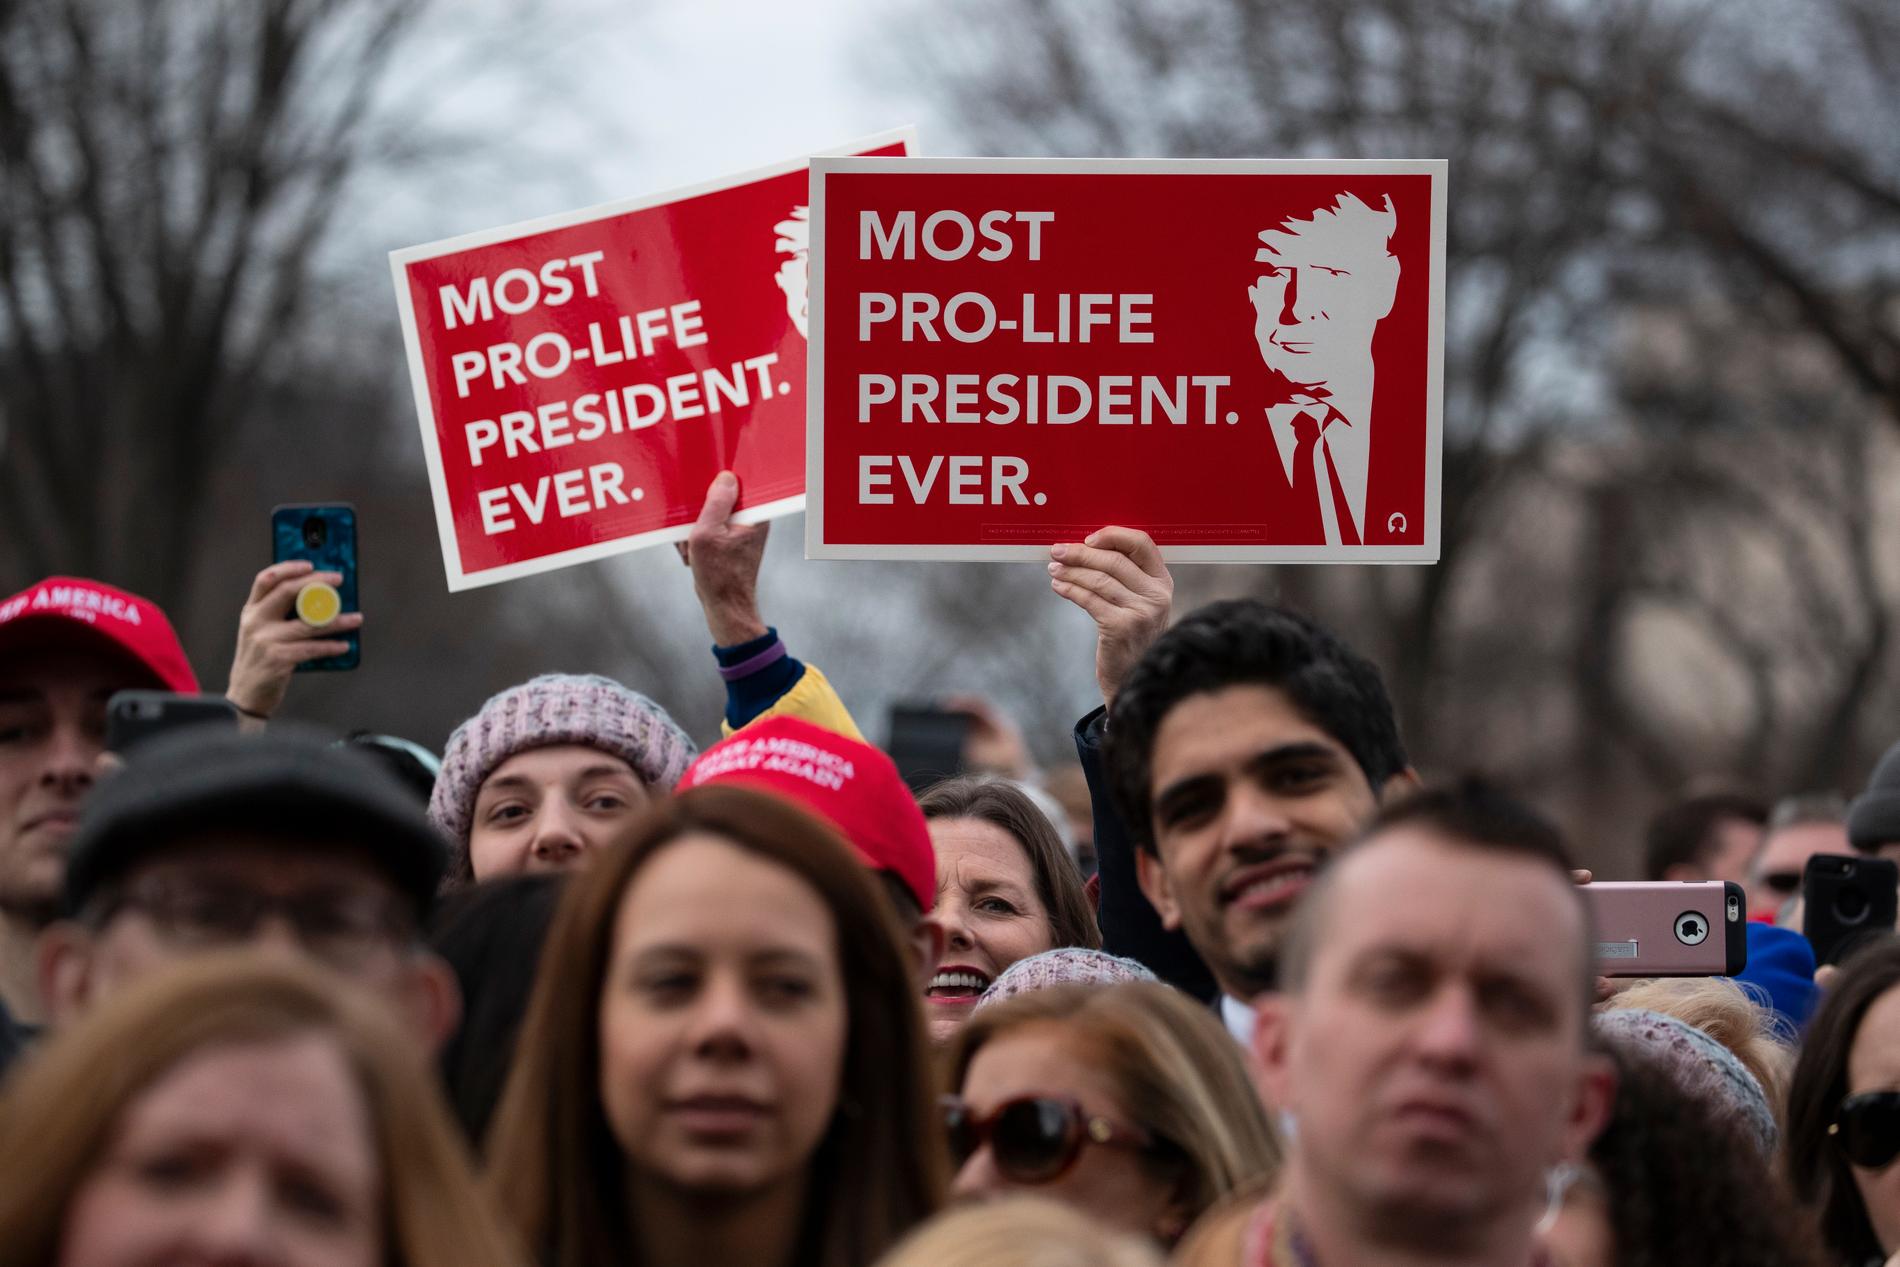 Presidenten som är mest "pro-life" och emot abort av dem alla, enligt honom själv och anhängare.